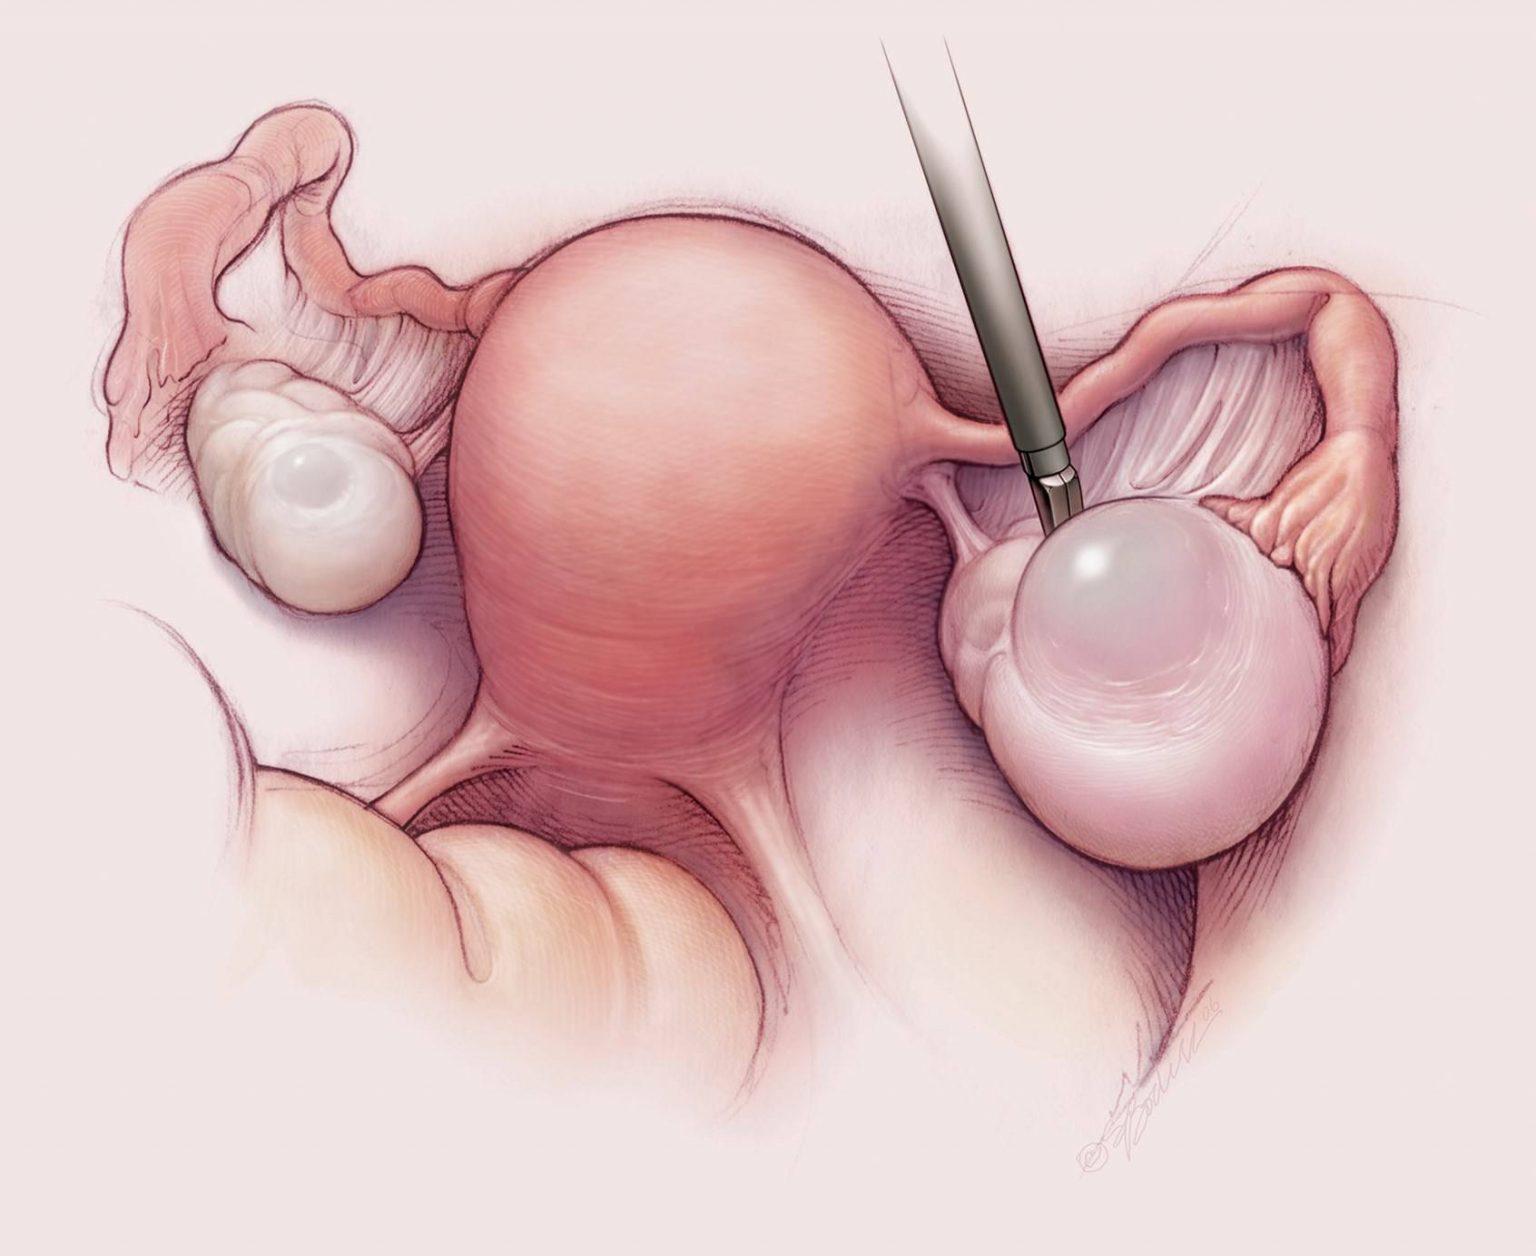 удалены яичники матка испытала оргазм фото 4